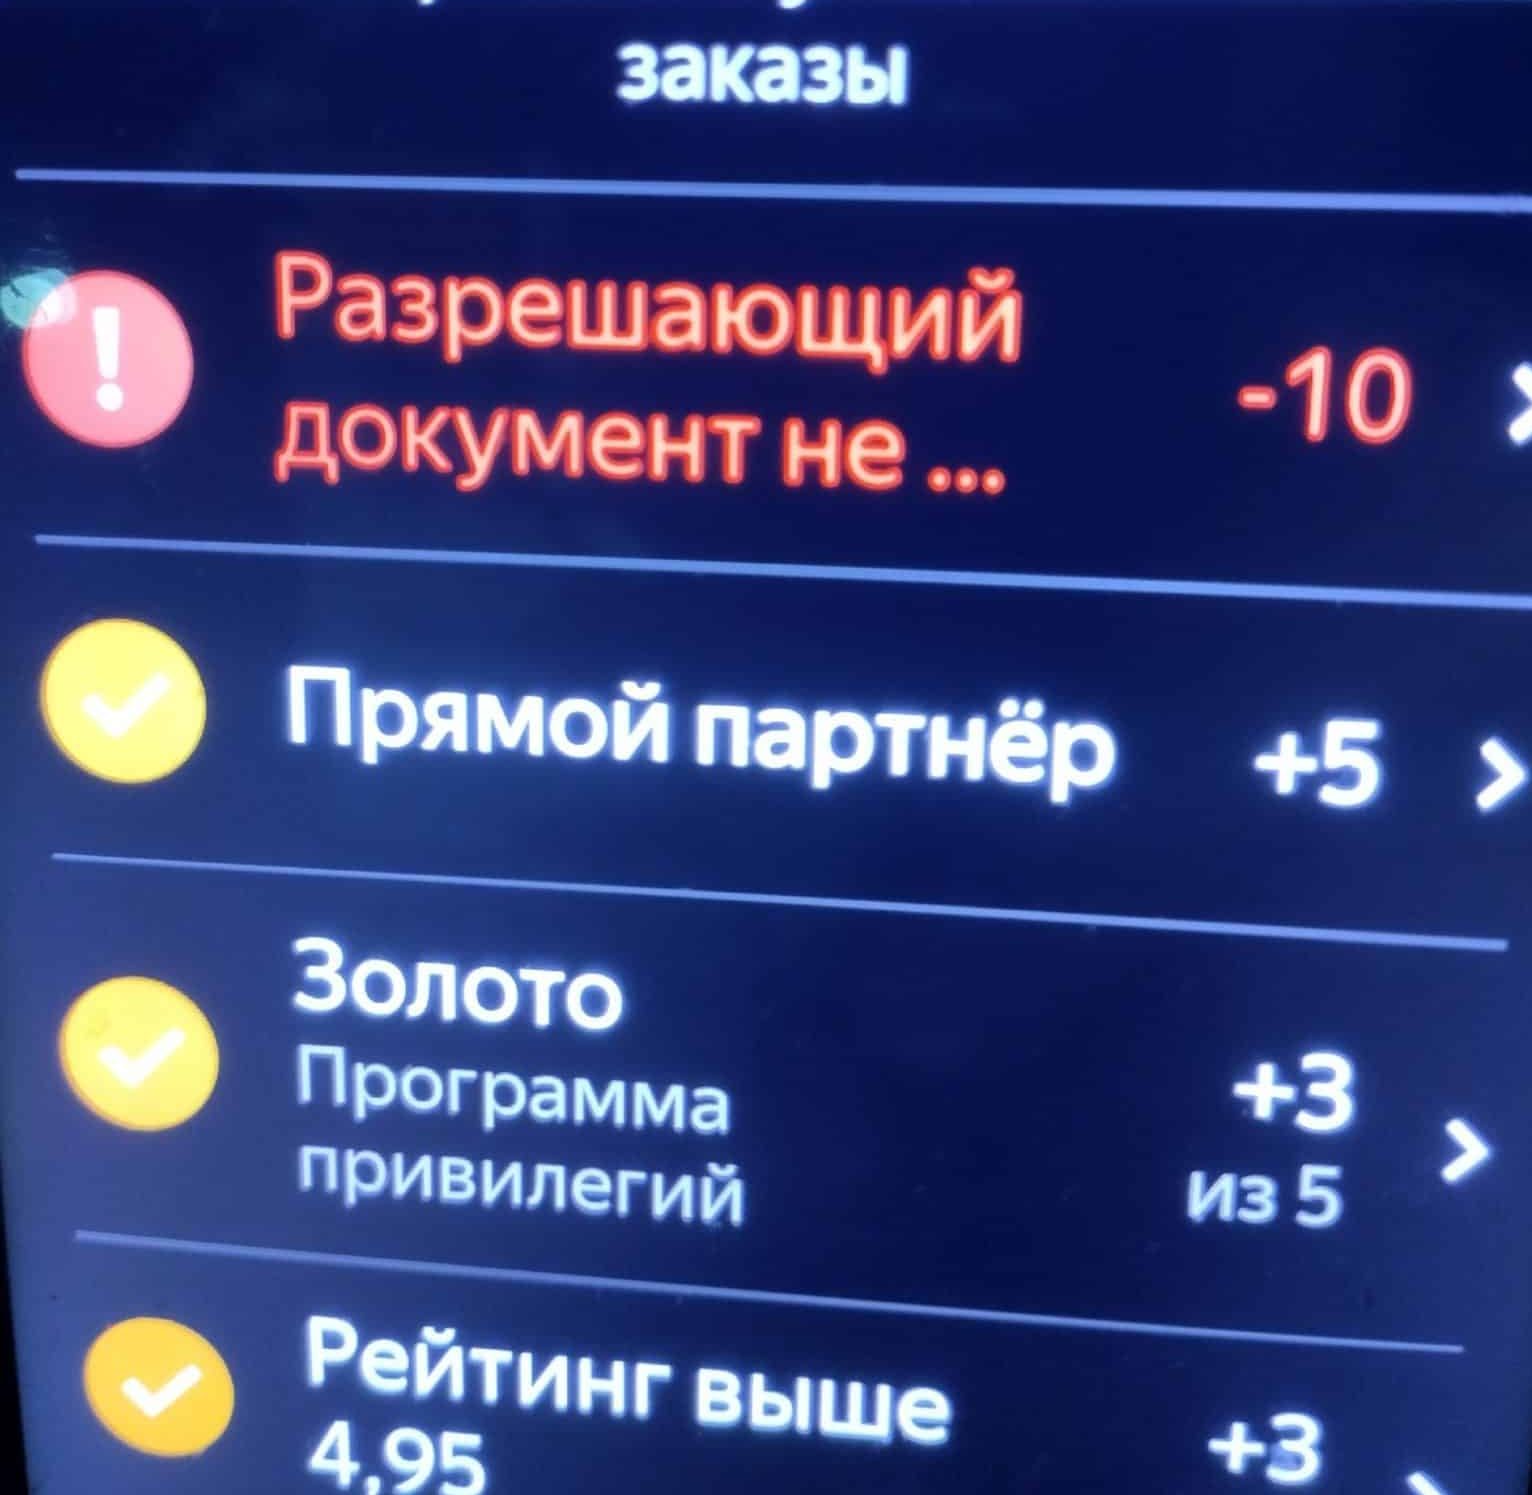 Яндекс начал требовать лицензию с омских таксистов